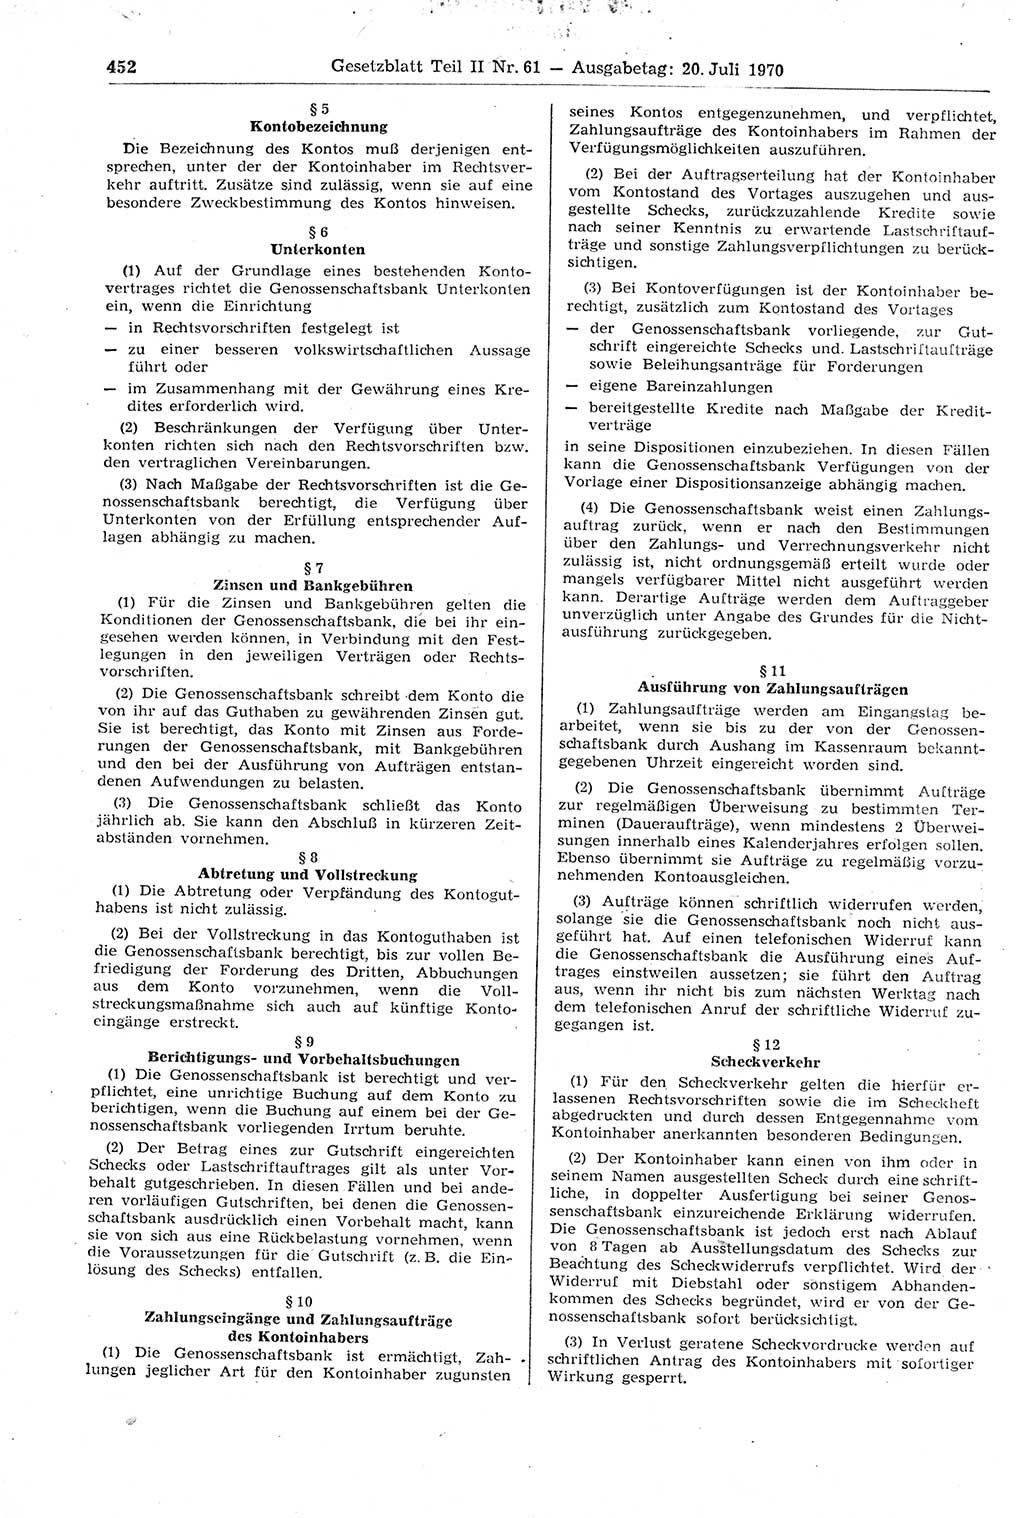 Gesetzblatt (GBl.) der Deutschen Demokratischen Republik (DDR) Teil ⅠⅠ 1970, Seite 452 (GBl. DDR ⅠⅠ 1970, S. 452)